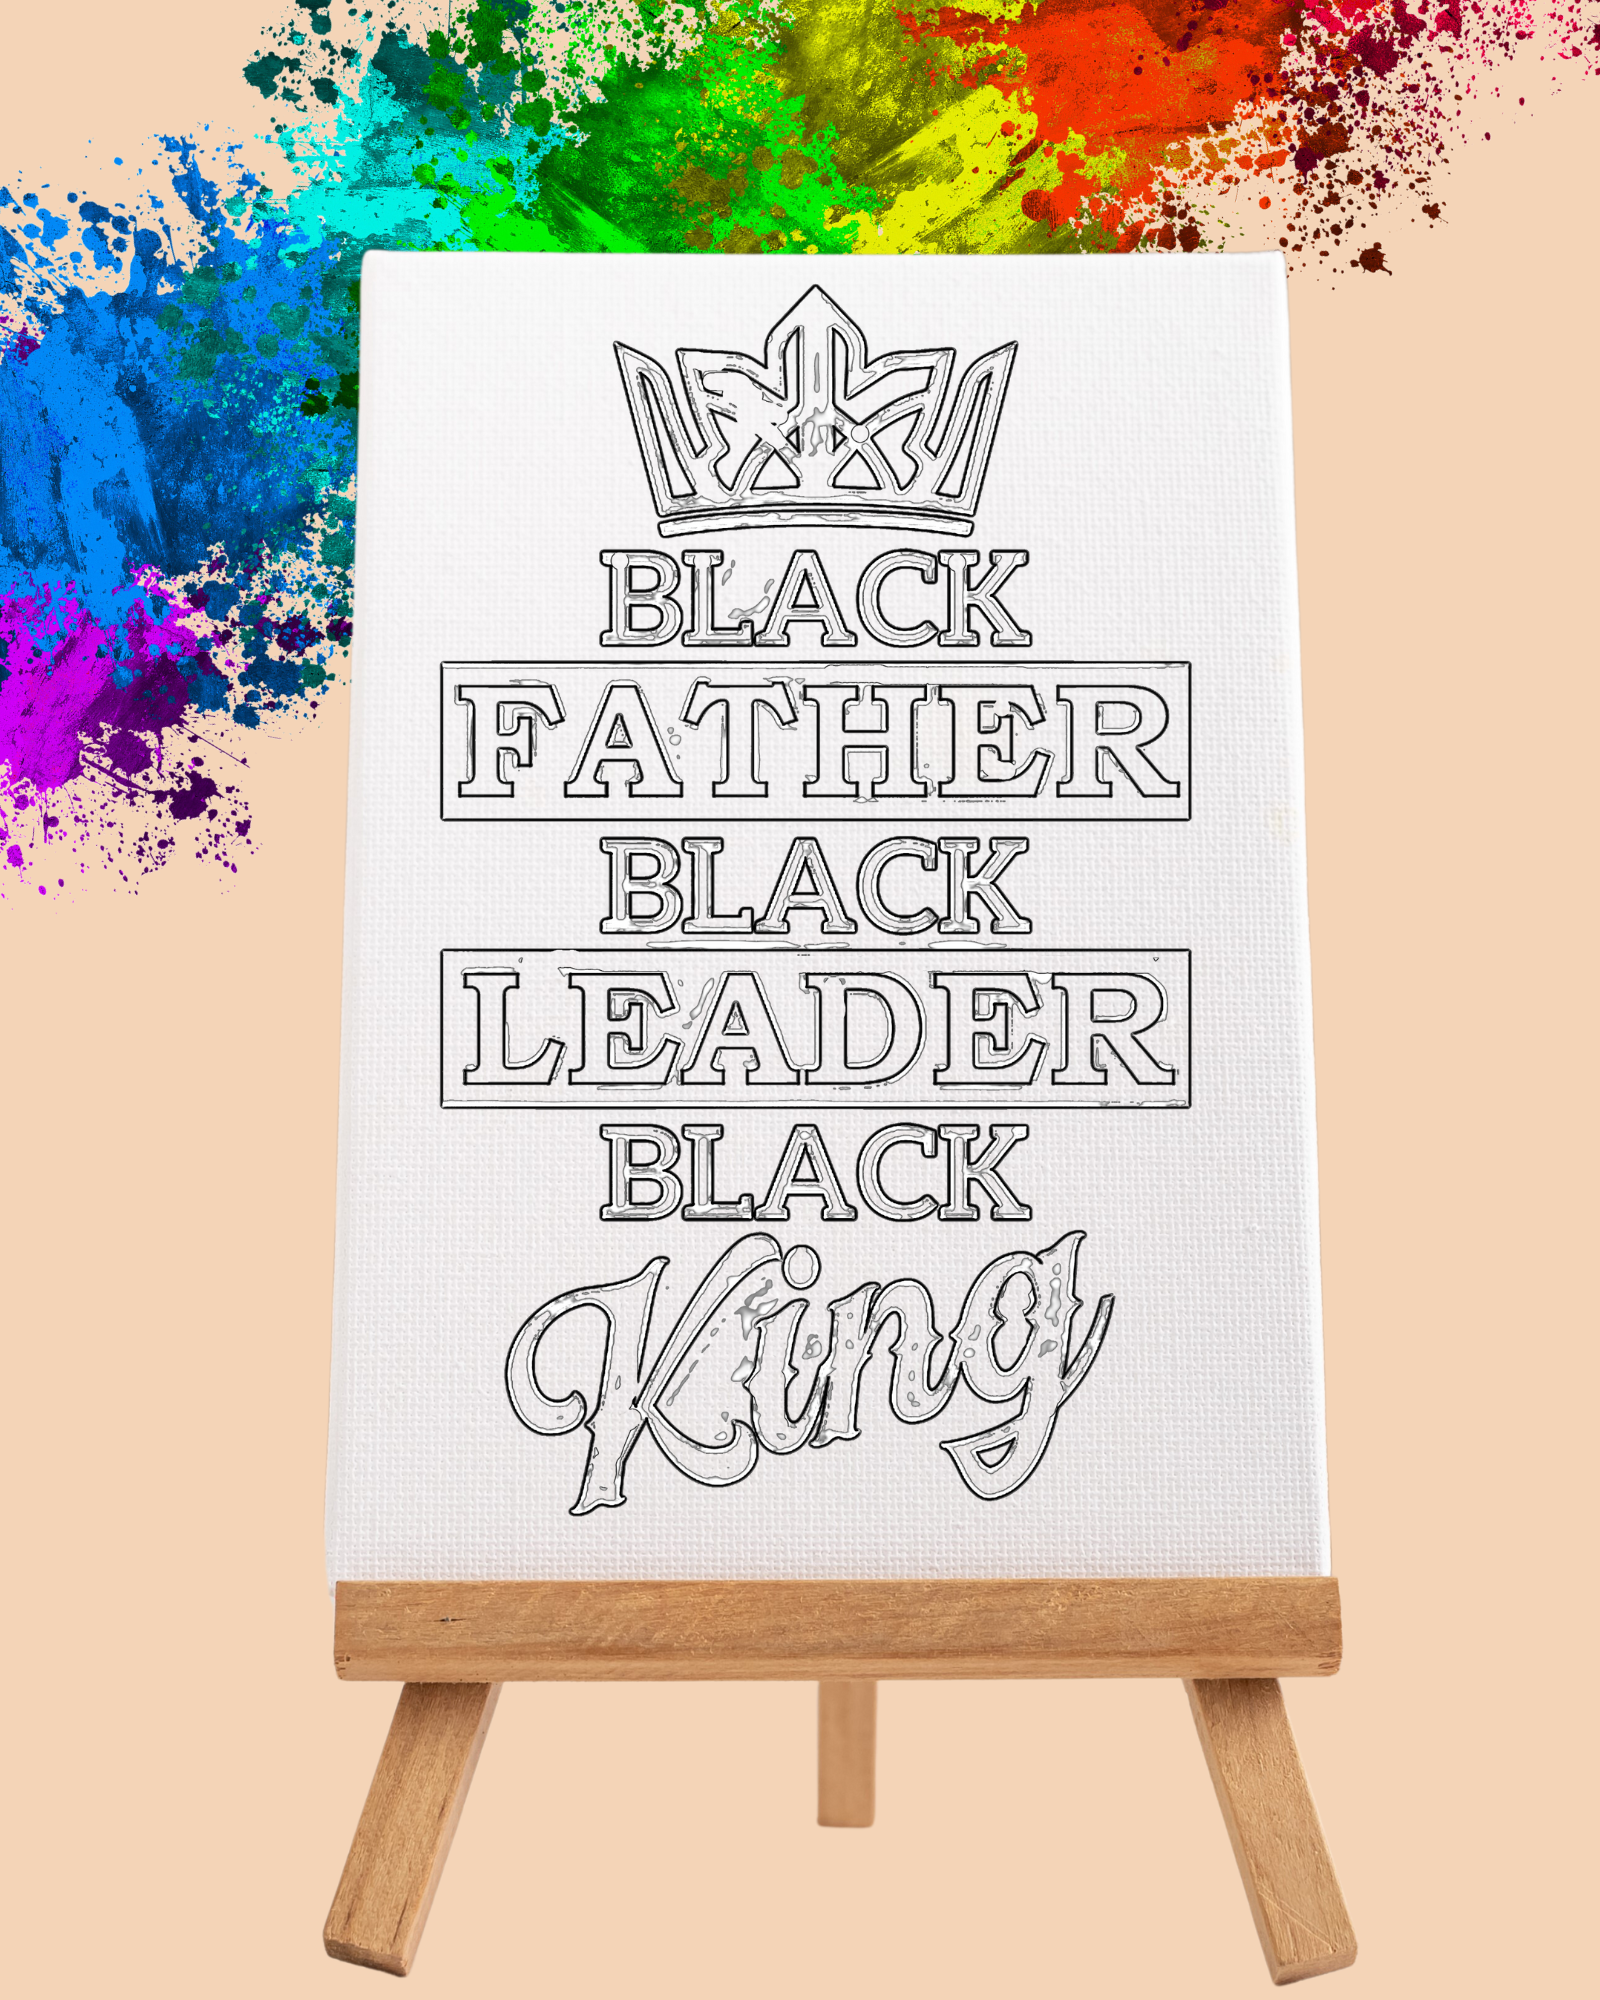 DIY Paint Party Kit - 11x14 Canvas - Black Father Black Leader